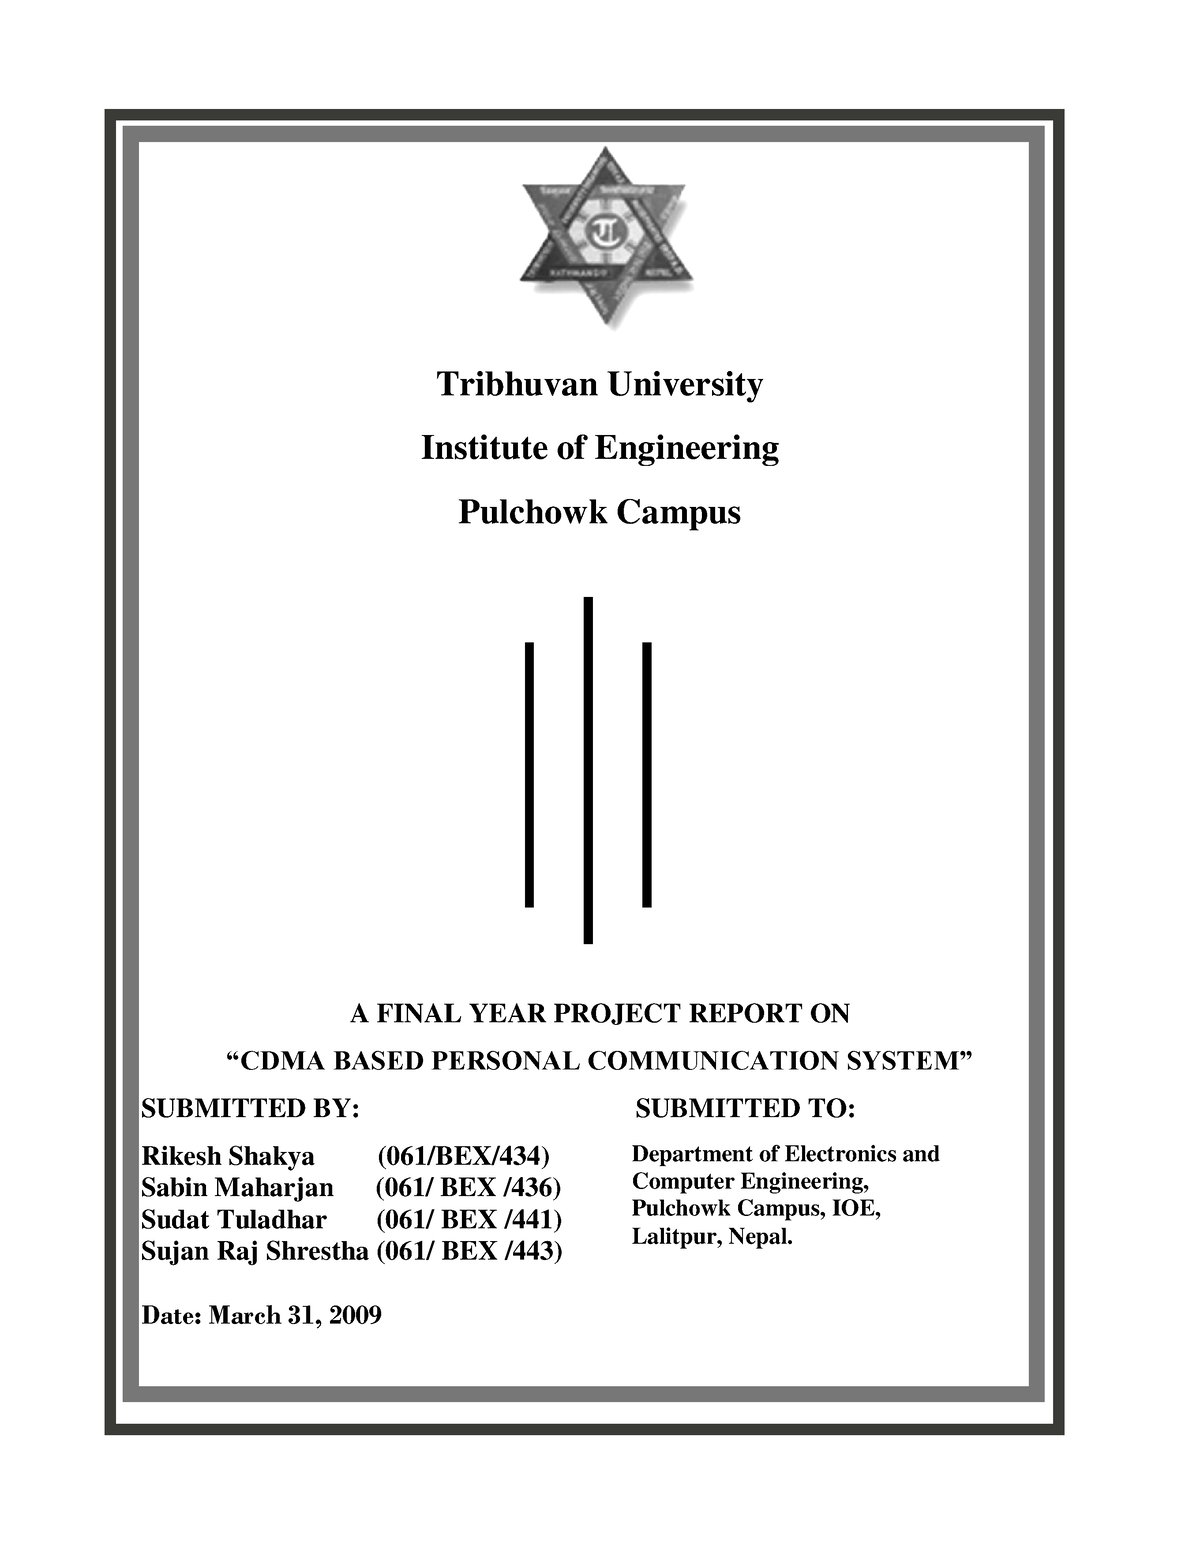 thesis of tribhuvan university